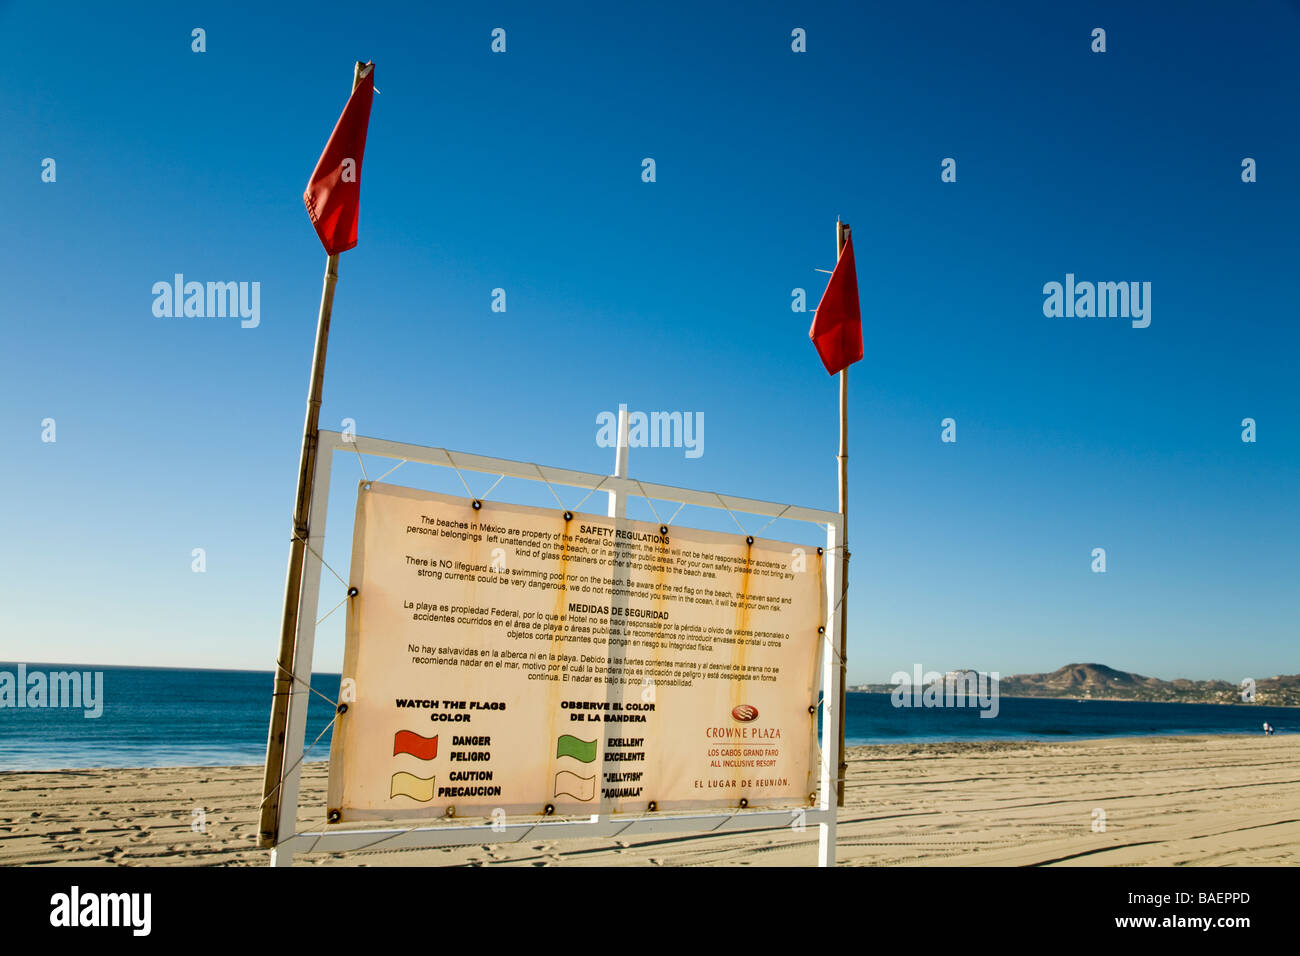 Mexique San Jose del Cabo drapeaux rouges à la plage d'avertissement de conditions dangereuses signe en anglais et espagnol expliquant les drapeaux Banque D'Images